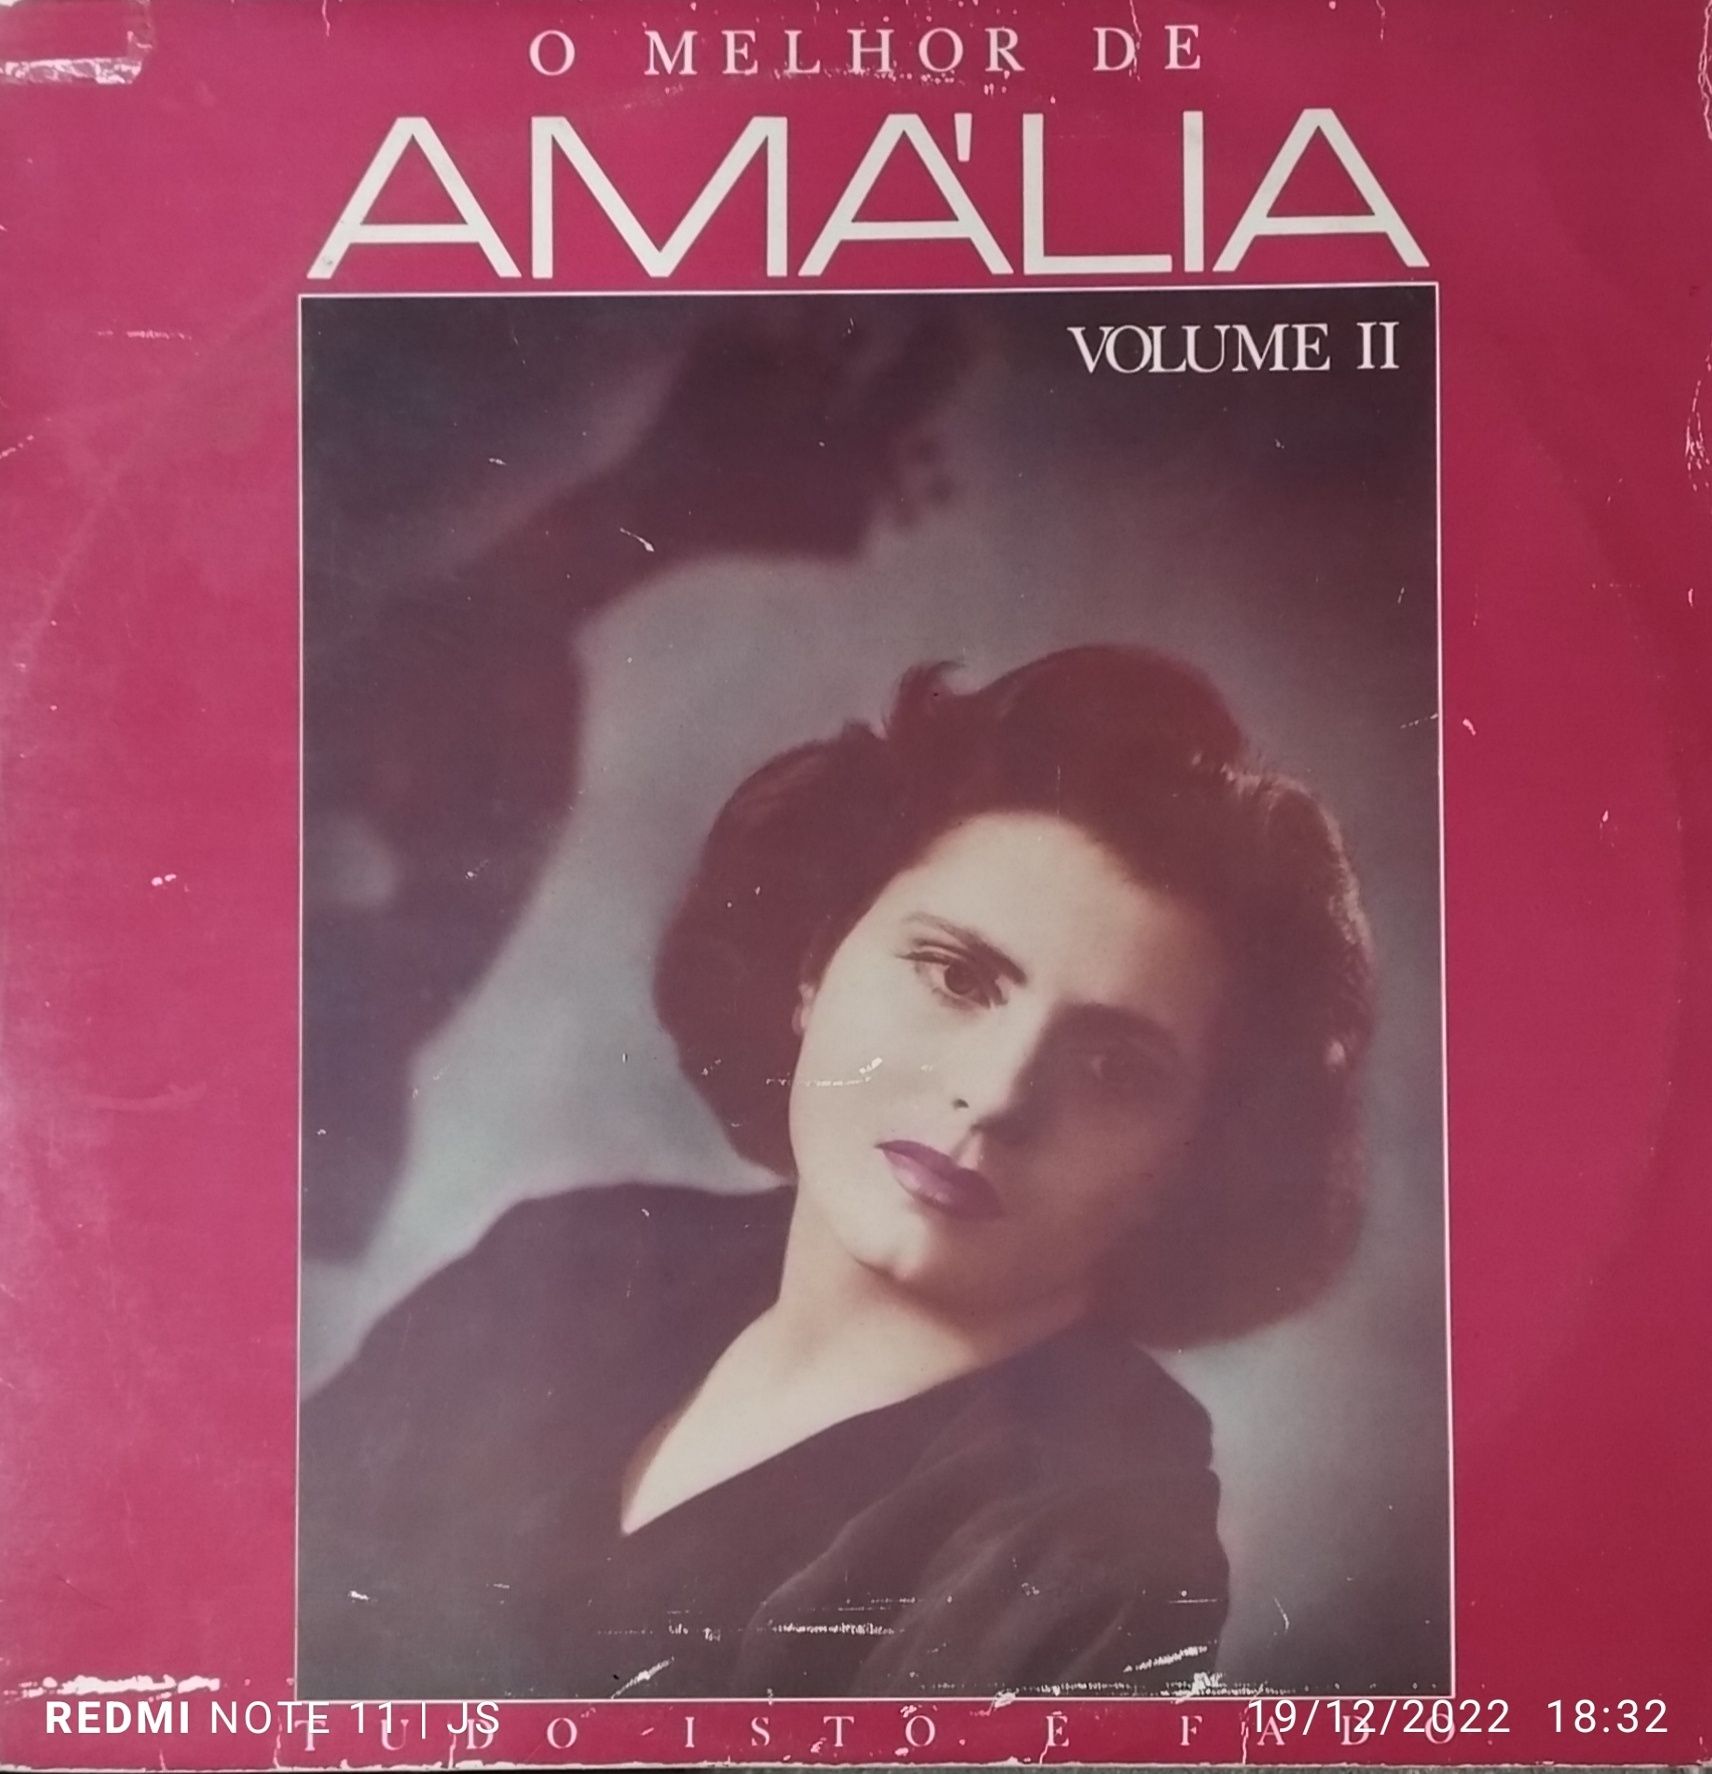 Discos vinil Amália Rodrigues a partir de 10€